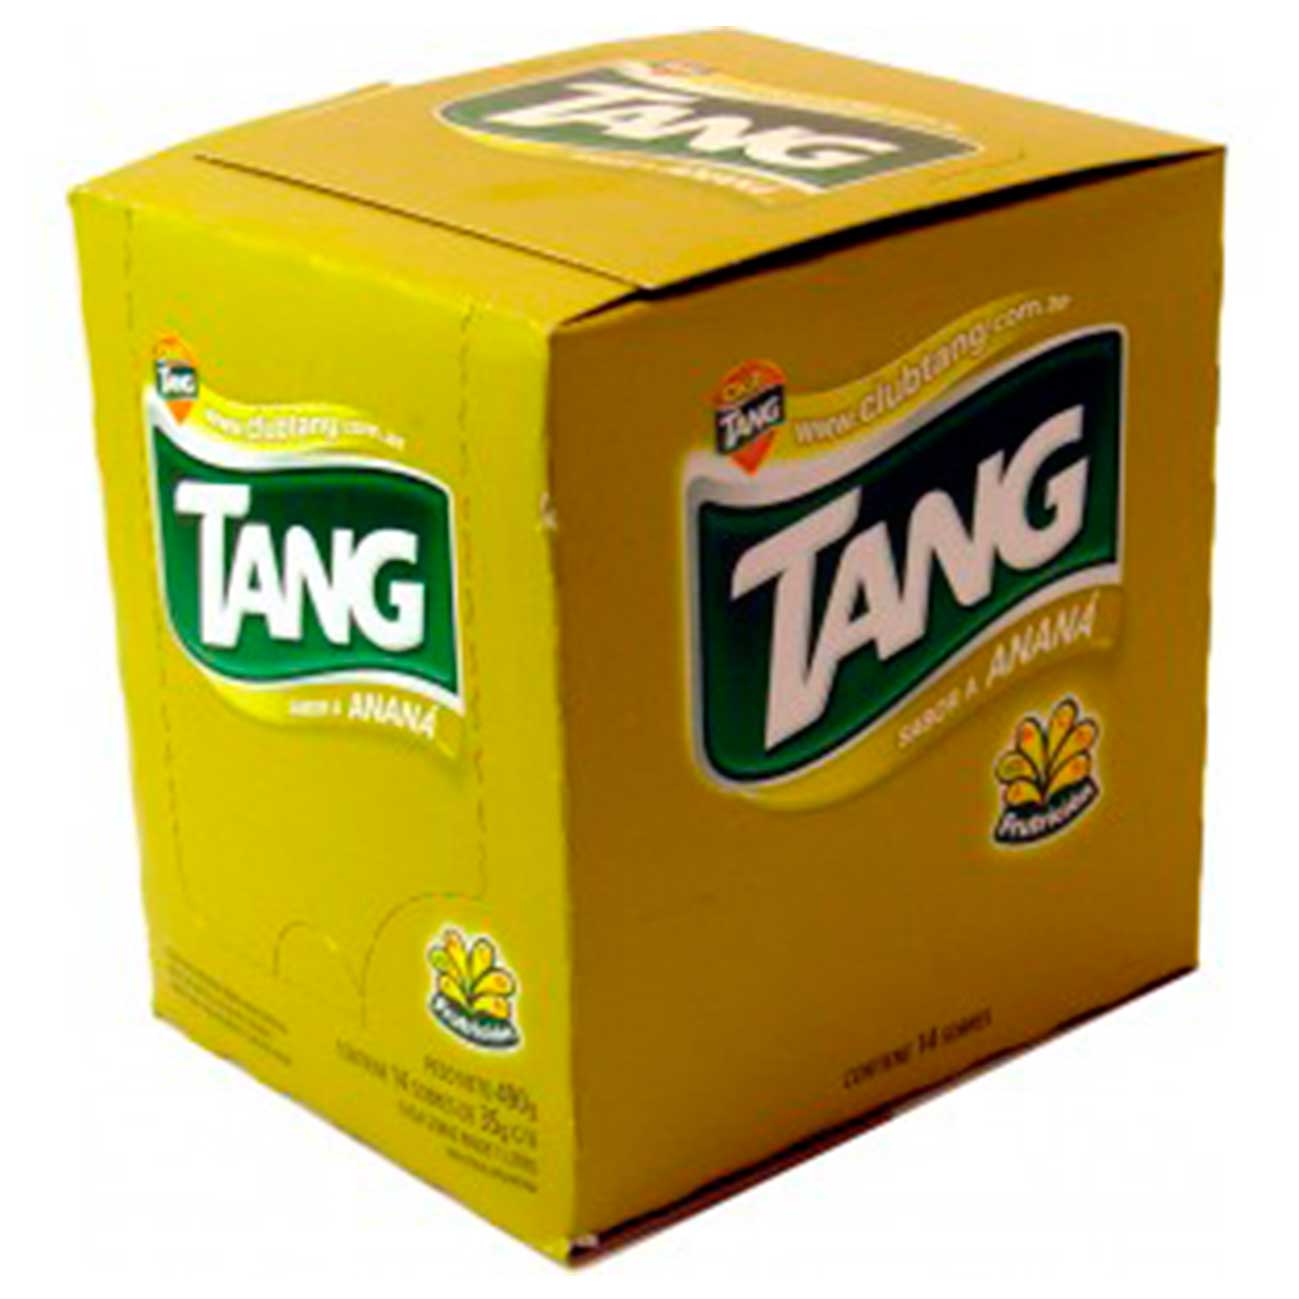 Jugo en polvo ananá Tang.